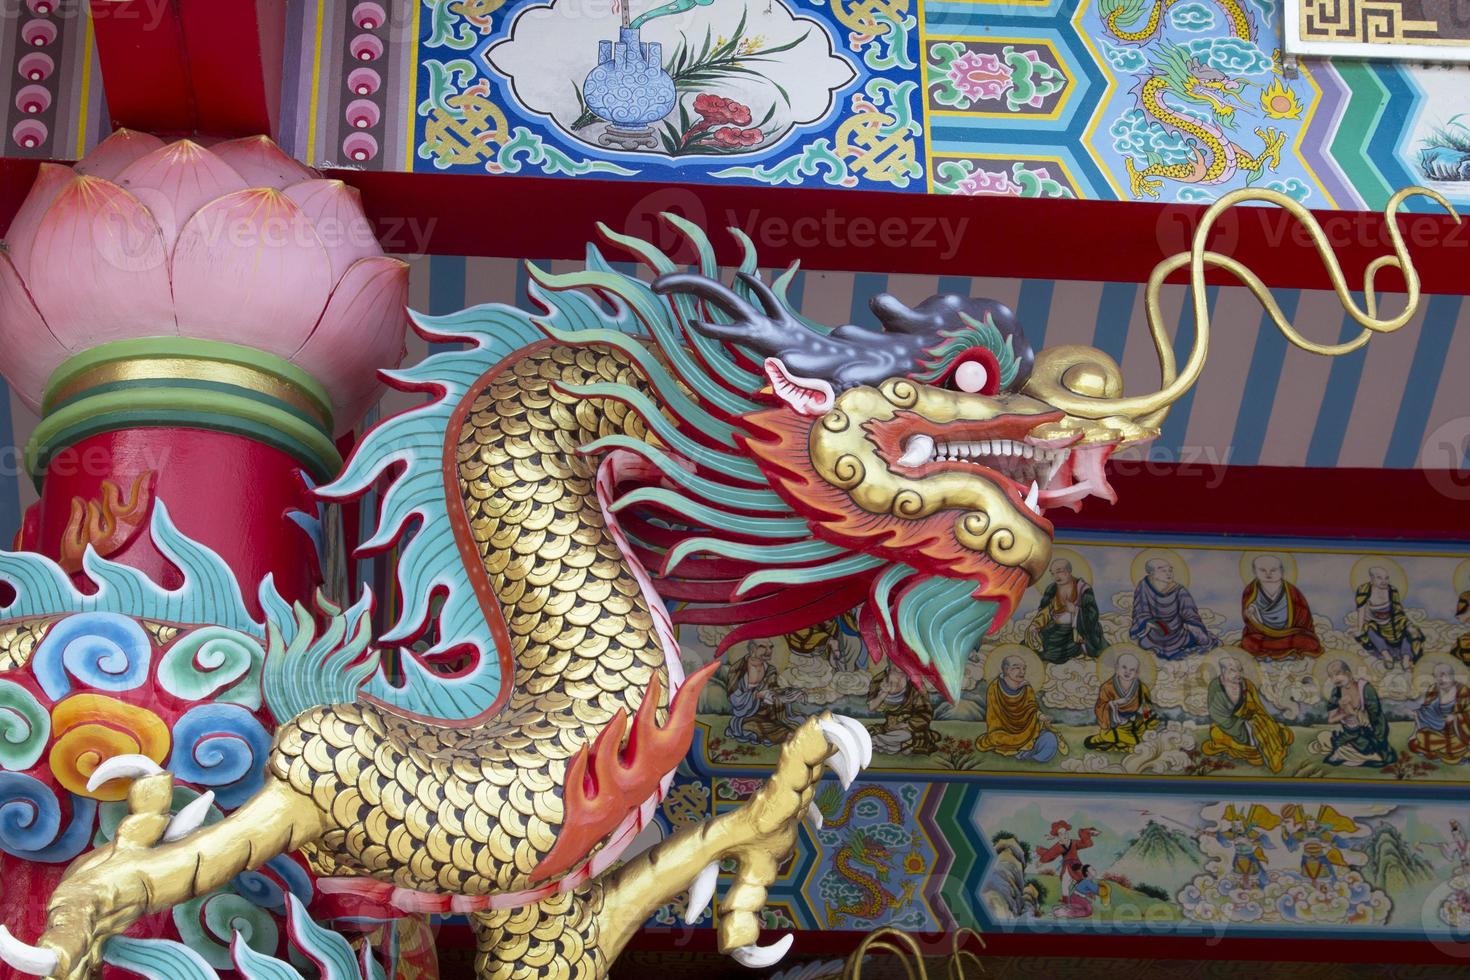 les statues de dragon, créature mythique de la littérature chinoise, sont souvent décorées dans les temples et sur le toit de belles sculptures et de ciels bleus. photo